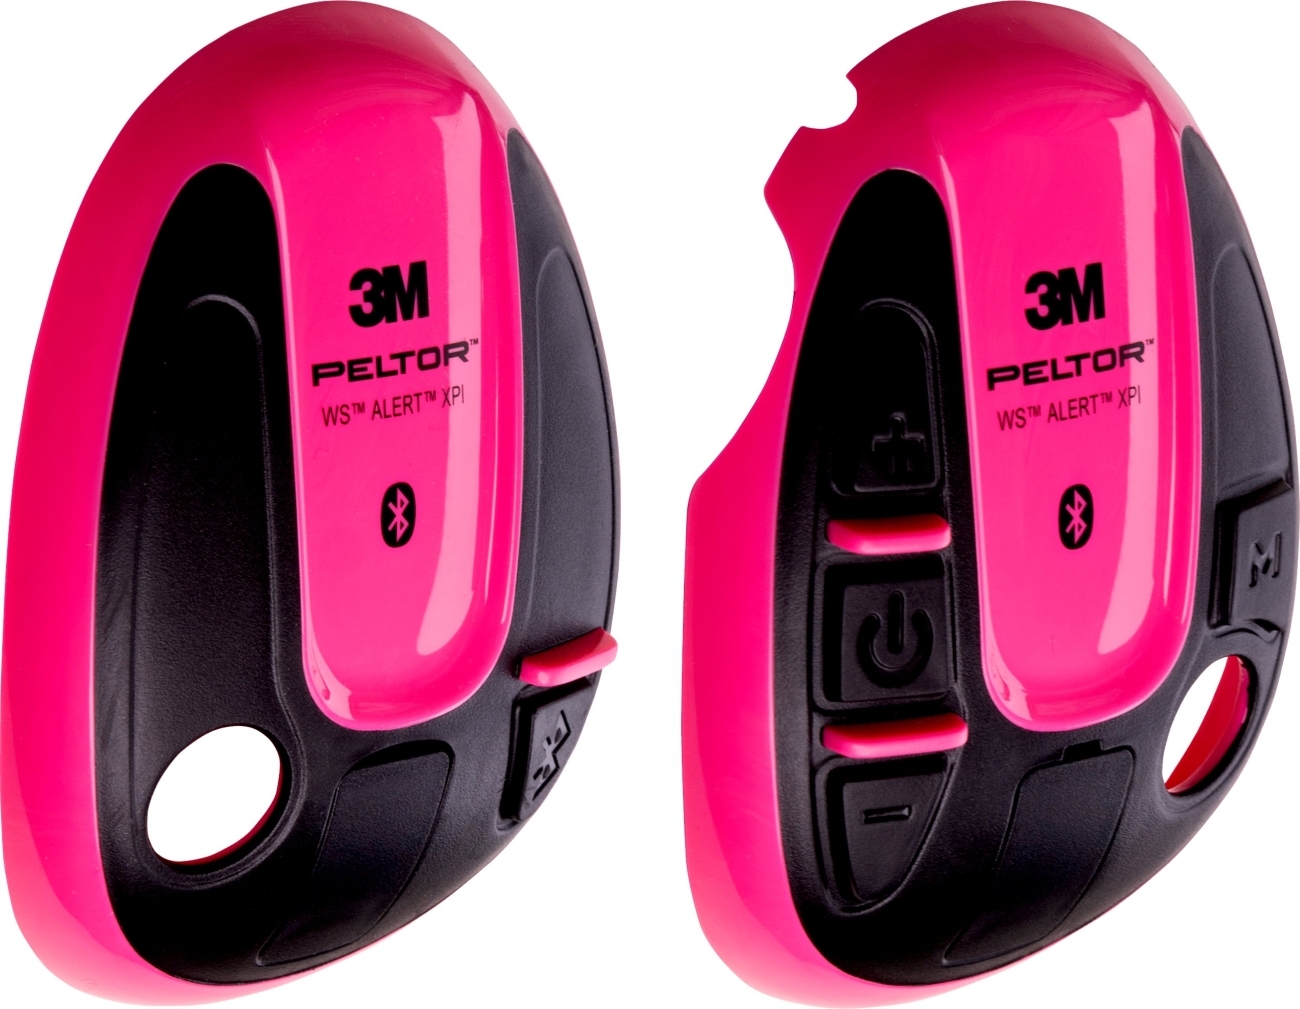 3M PELTOR-suojukset WS ALERT-kuulokkeille, vaaleanpunainen, 1 pari (vasen oikea), 210300-664-RE/1